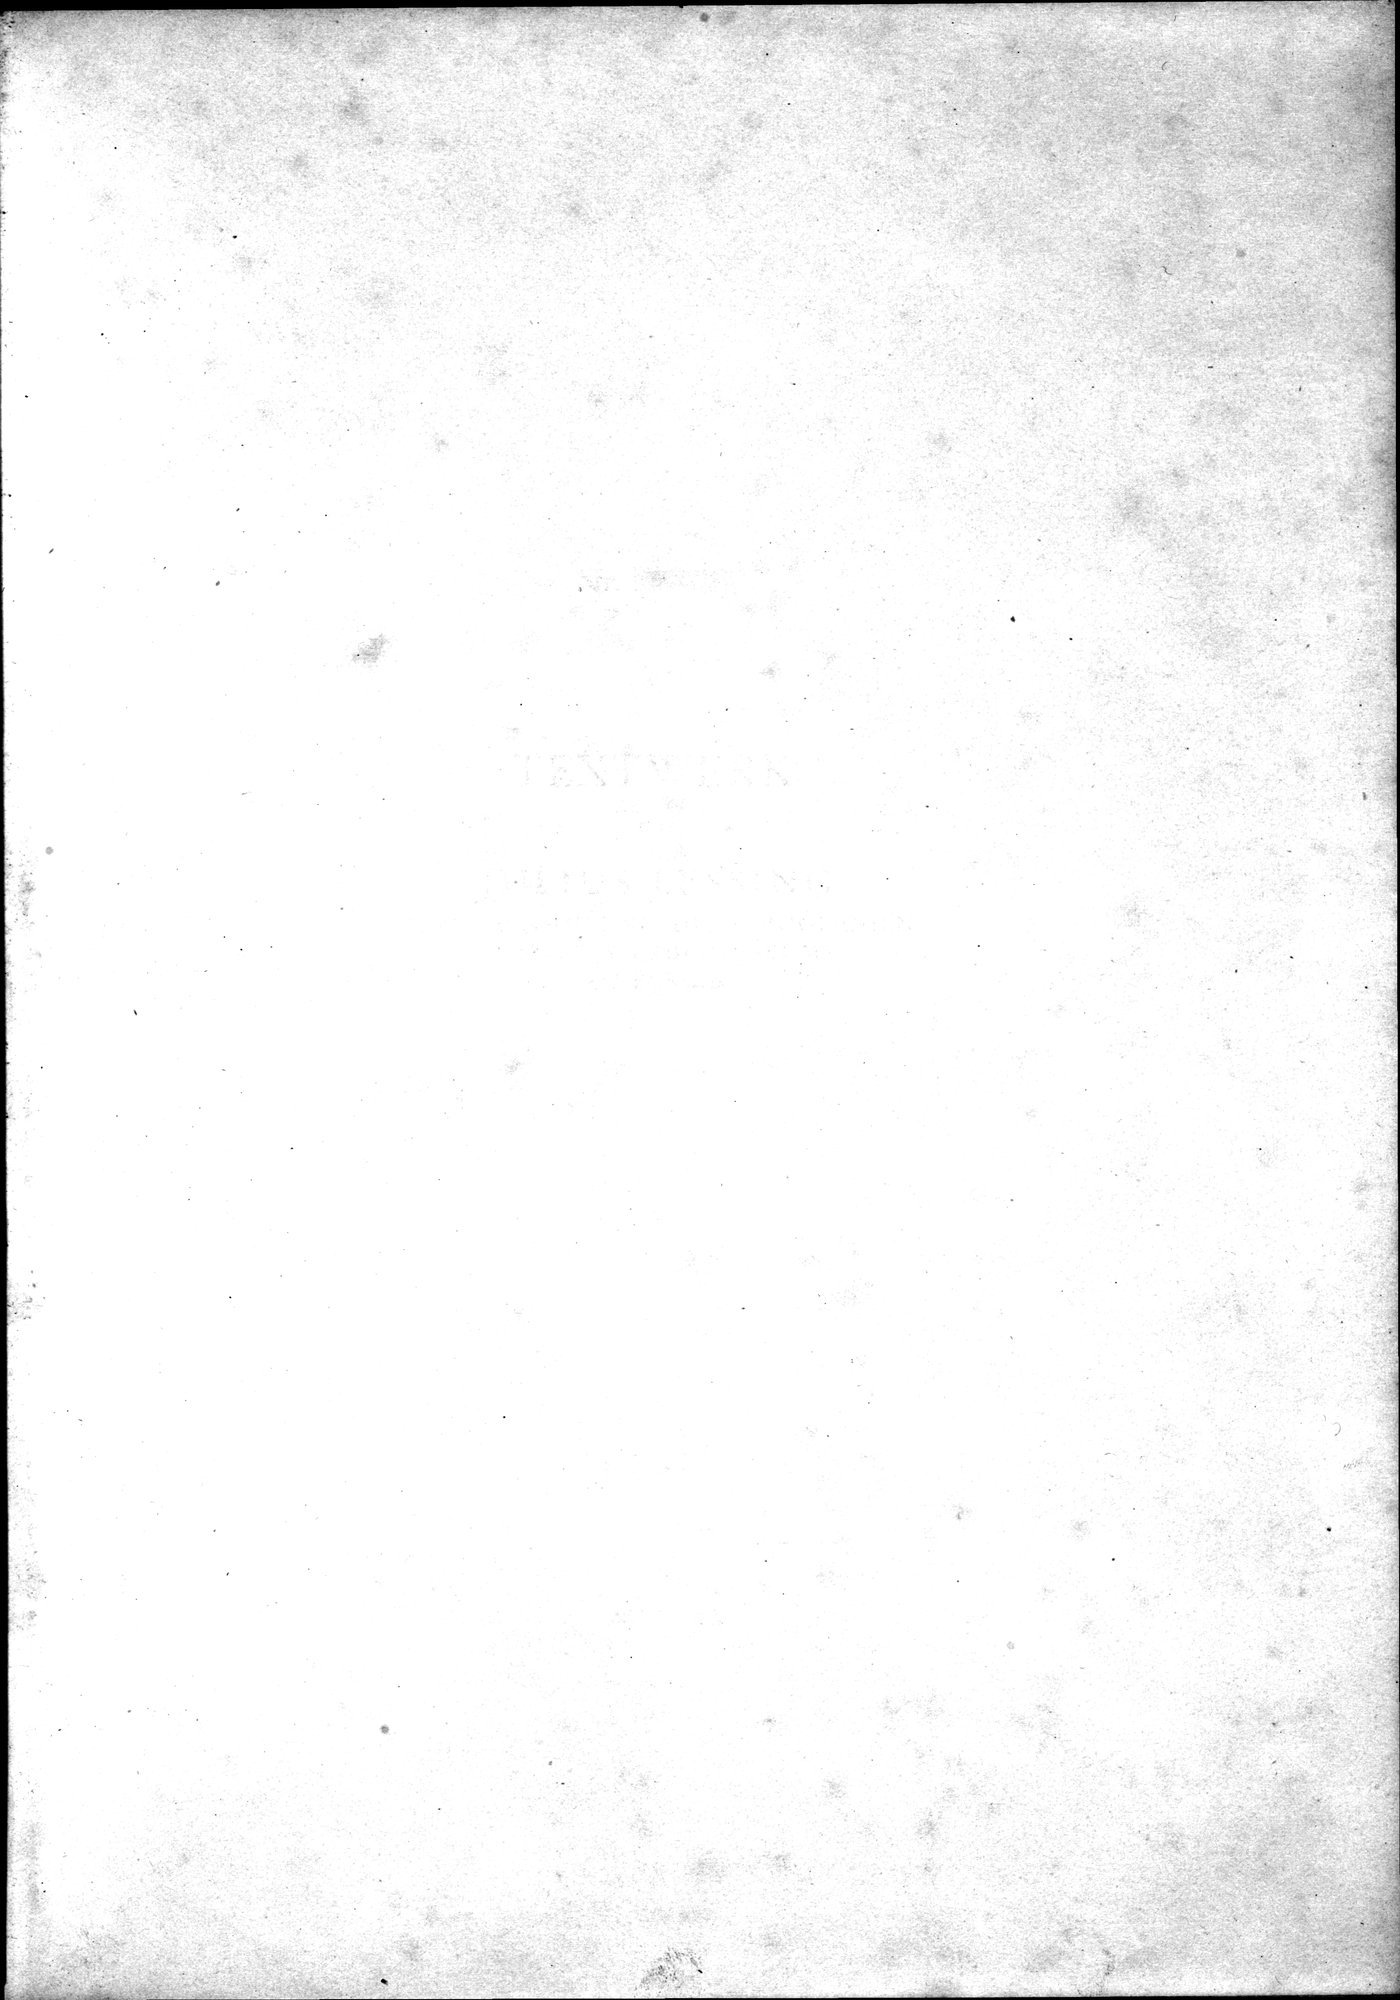 Kunstgeschichte der Seidenweberei : vol.1 / Page 5 (Grayscale High Resolution Image)